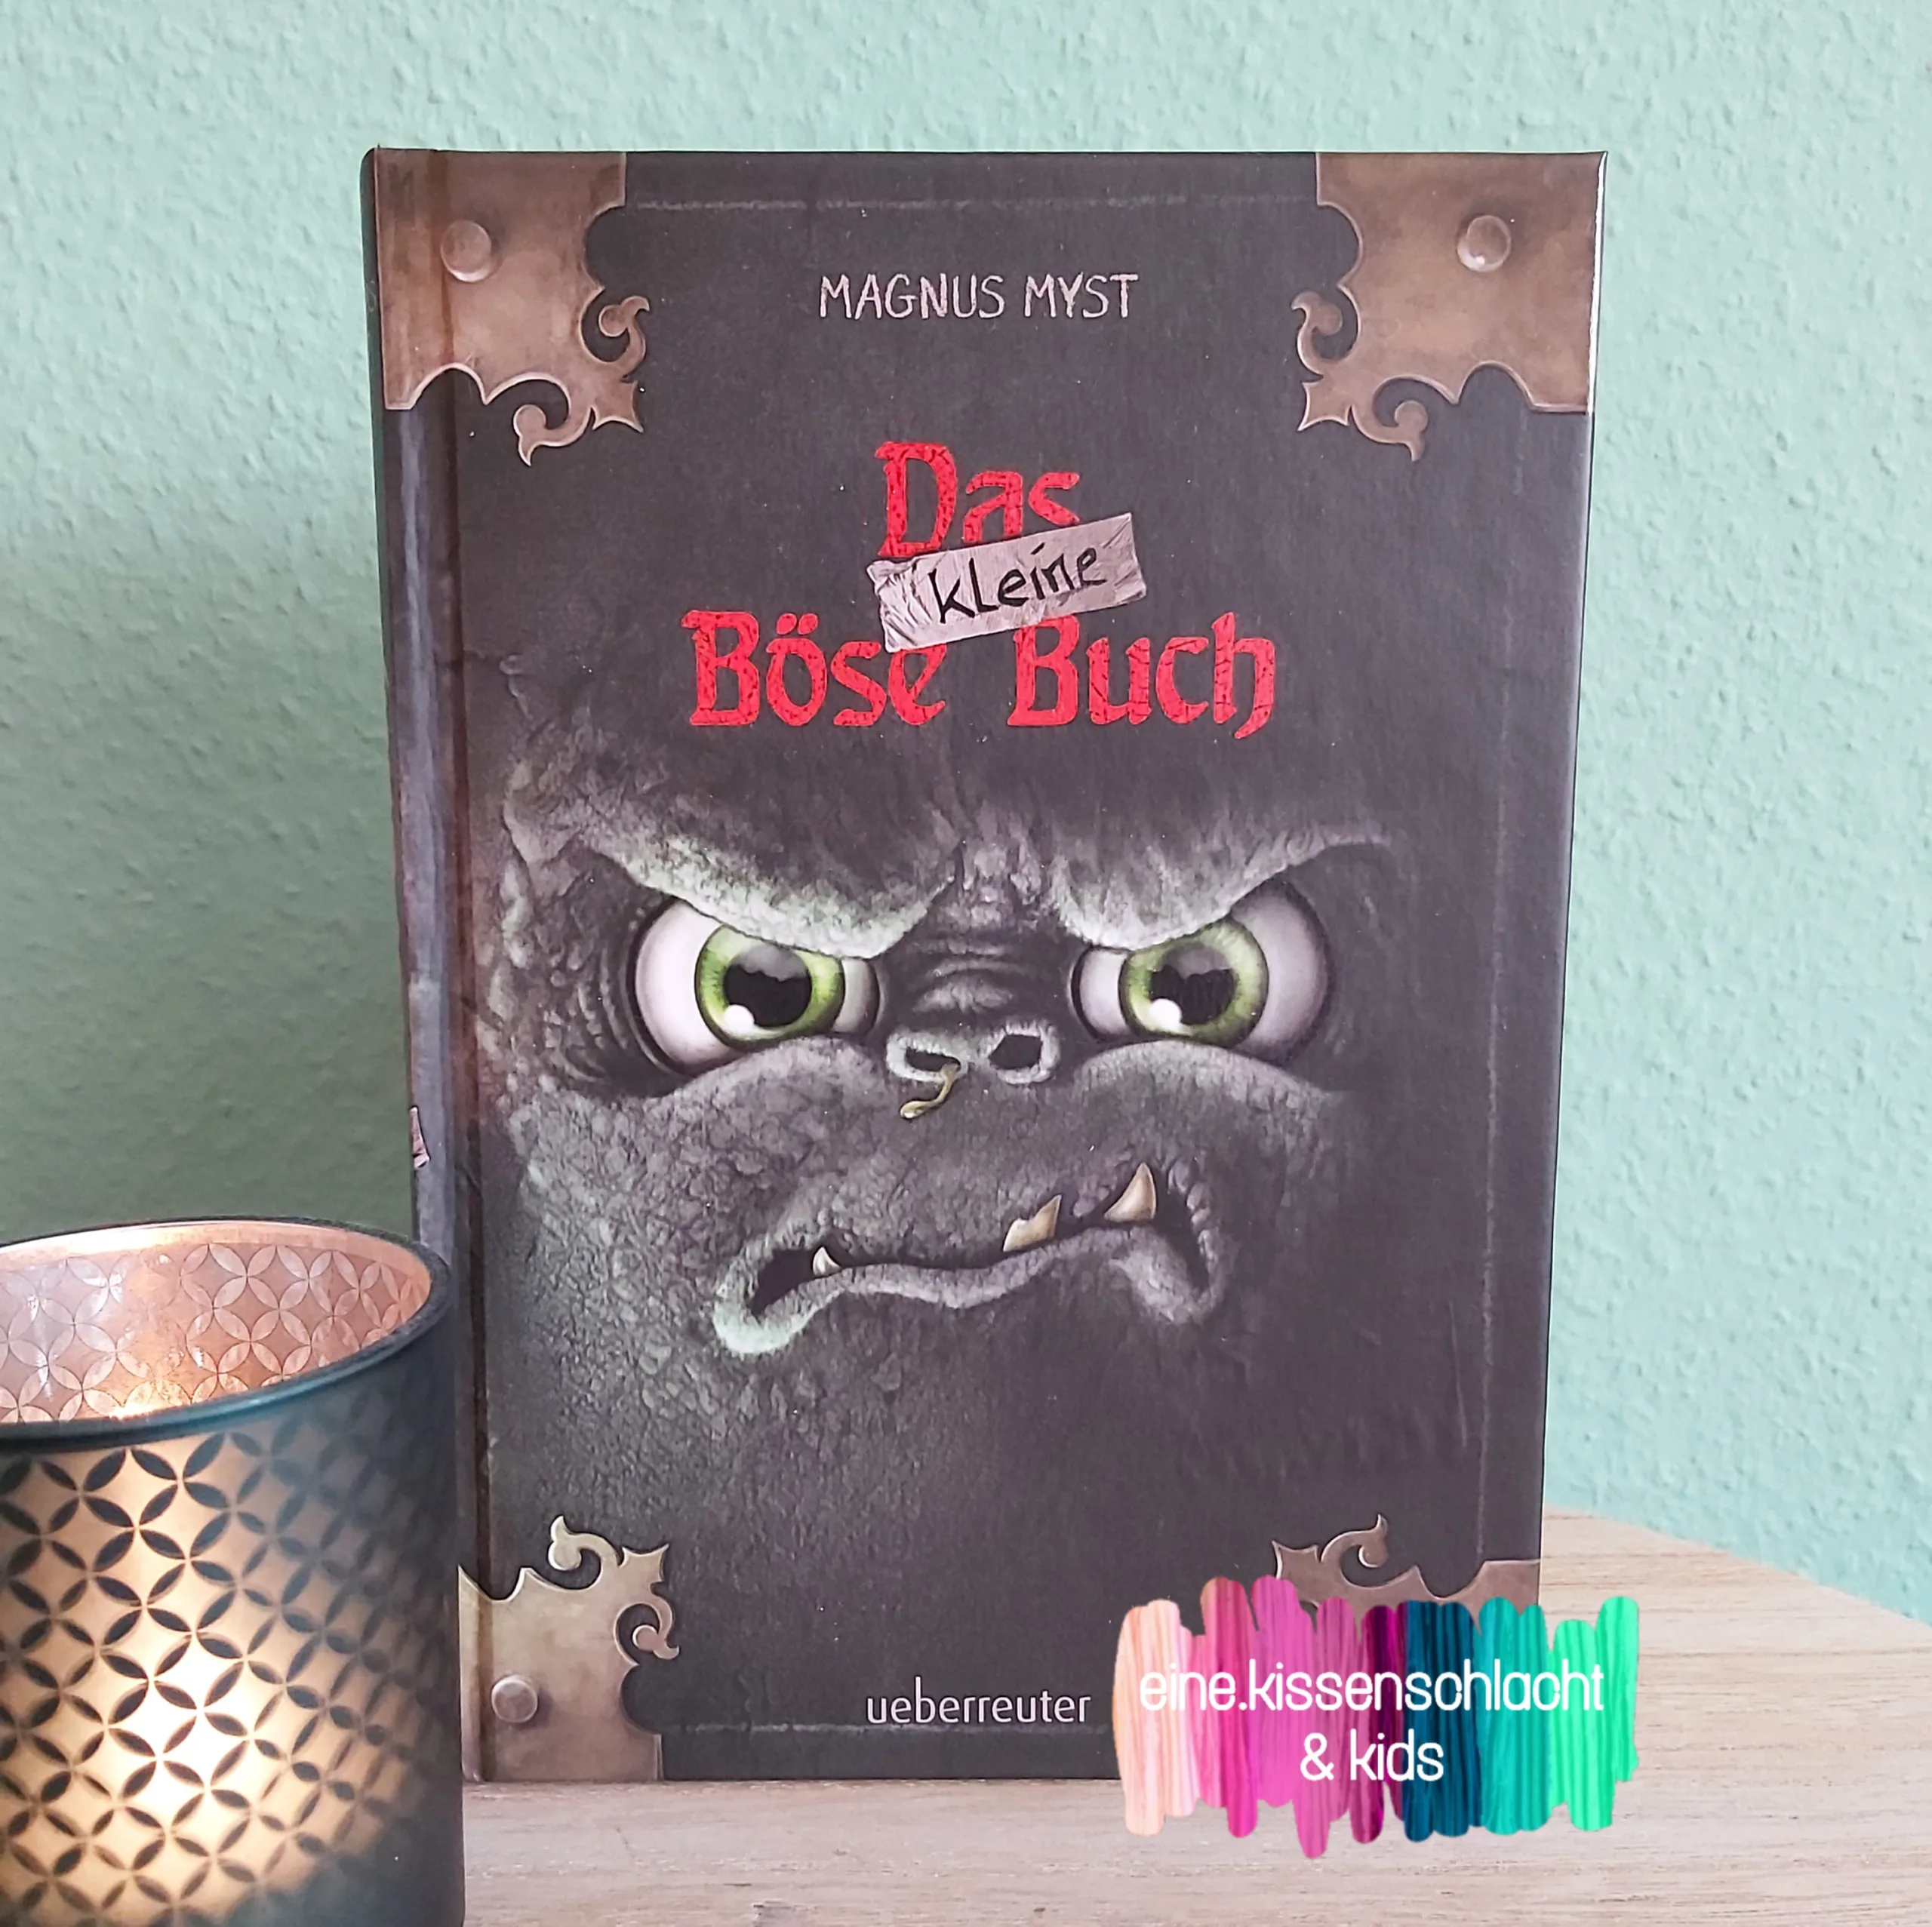 You are currently viewing Das kleine böse Buch (Magnus Myst)